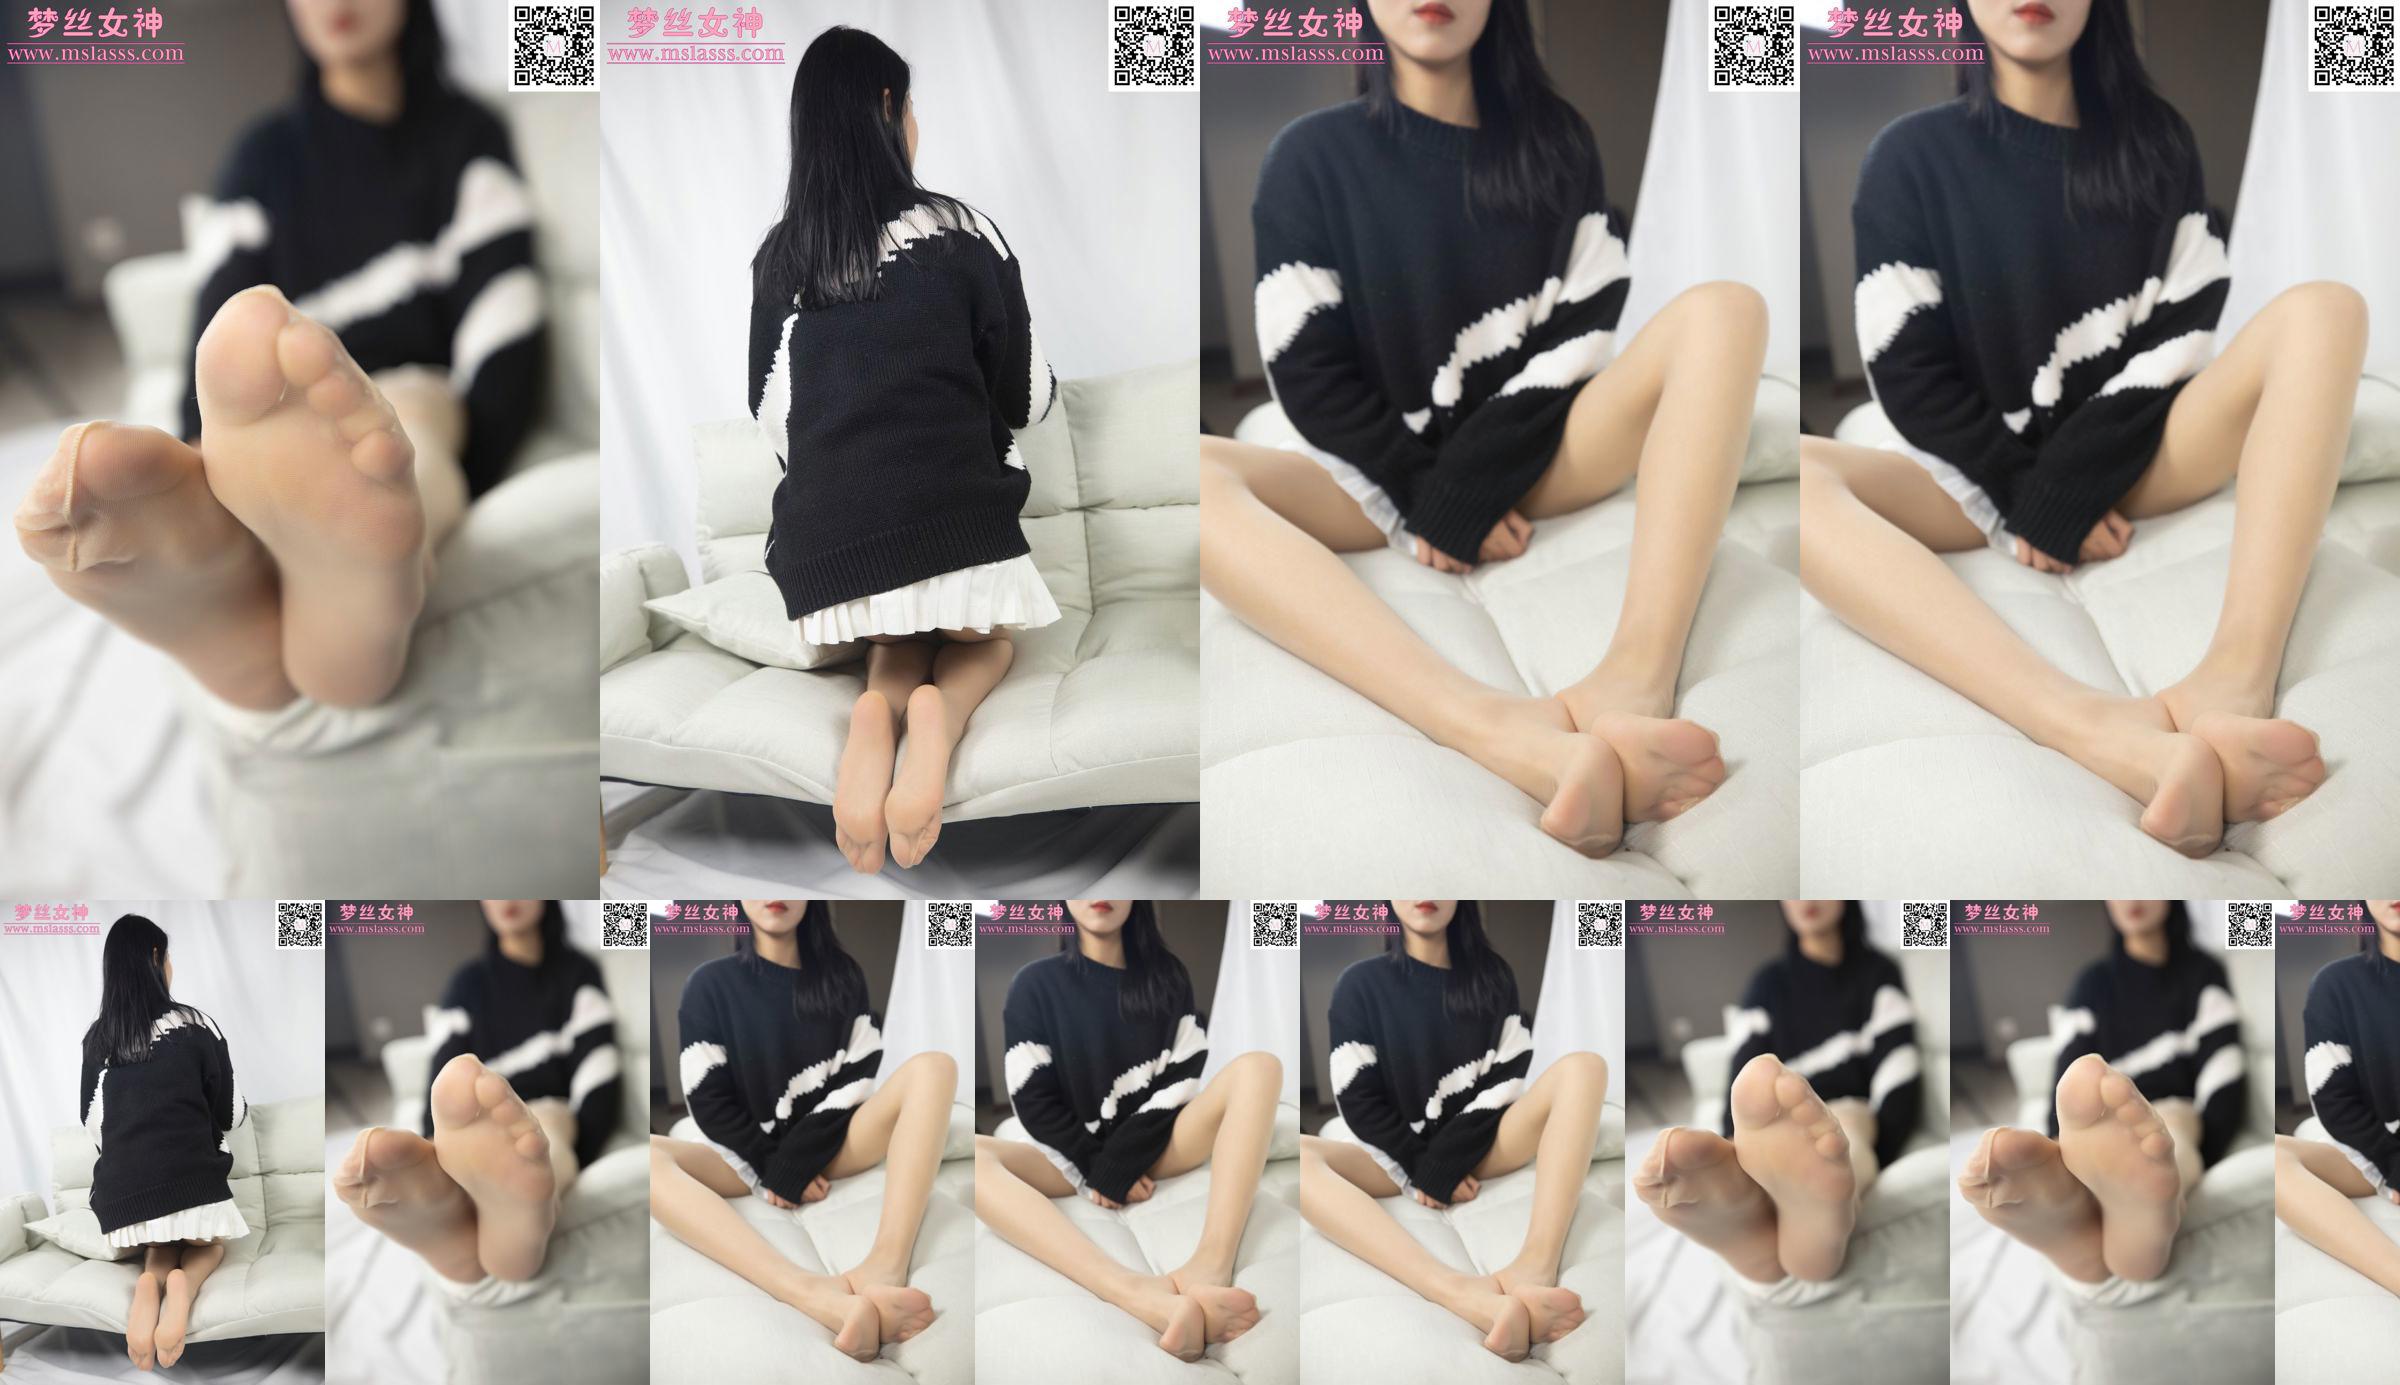 [Goddess of Dreams MSLASS] Sweter Xiaomu nie może powstrzymać jej długich nóg No.f2ae5e Strona 8